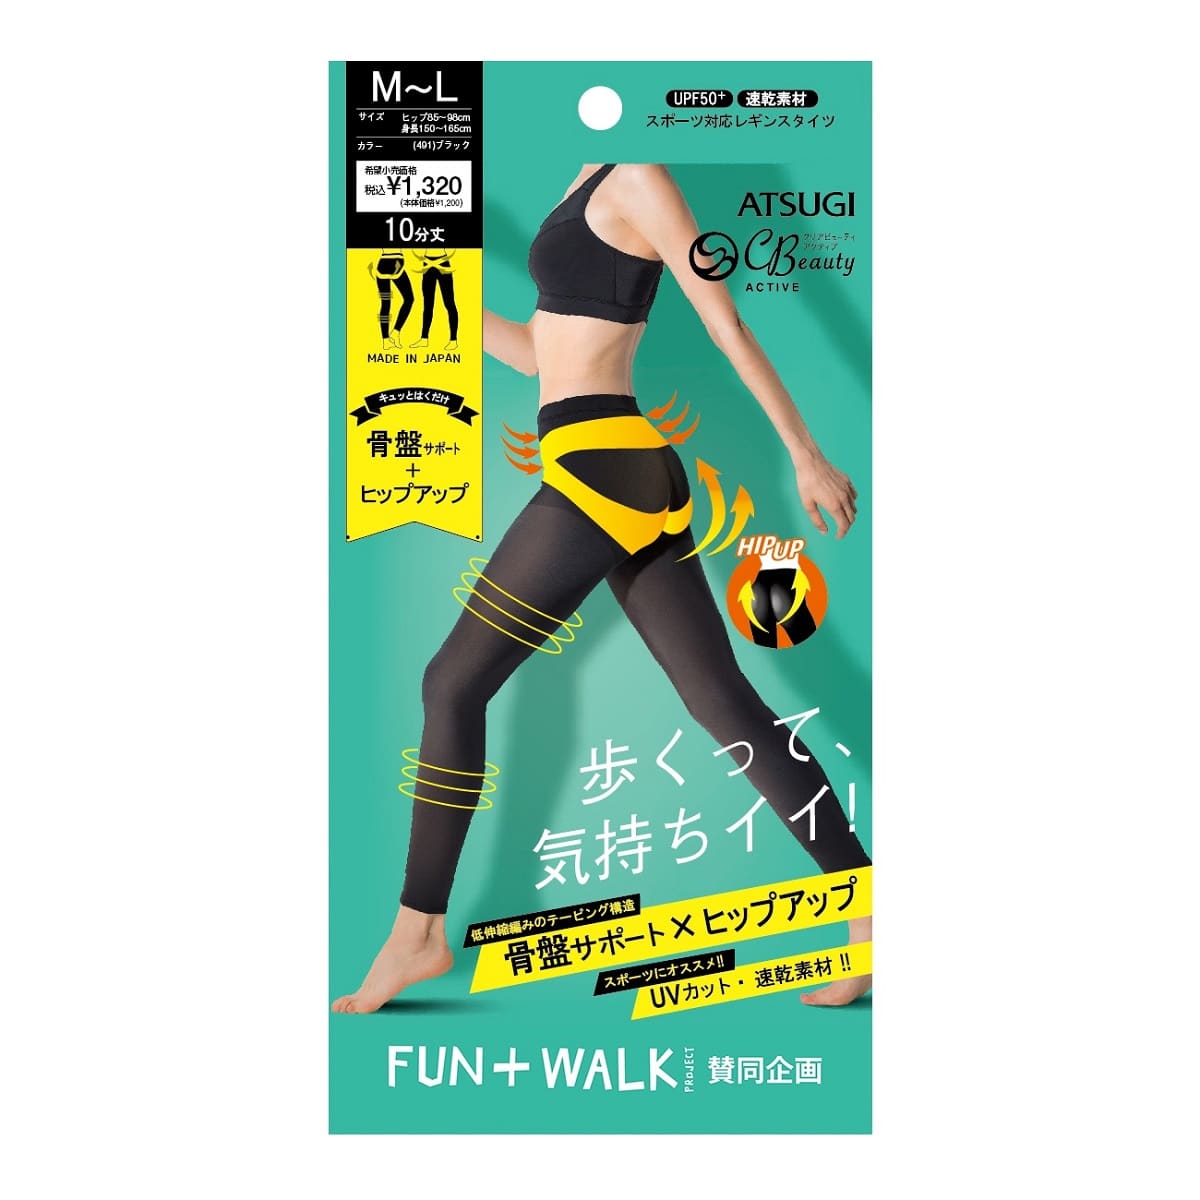 【FUN+WALK】骨盤サポート 10分丈スポーツレギンス